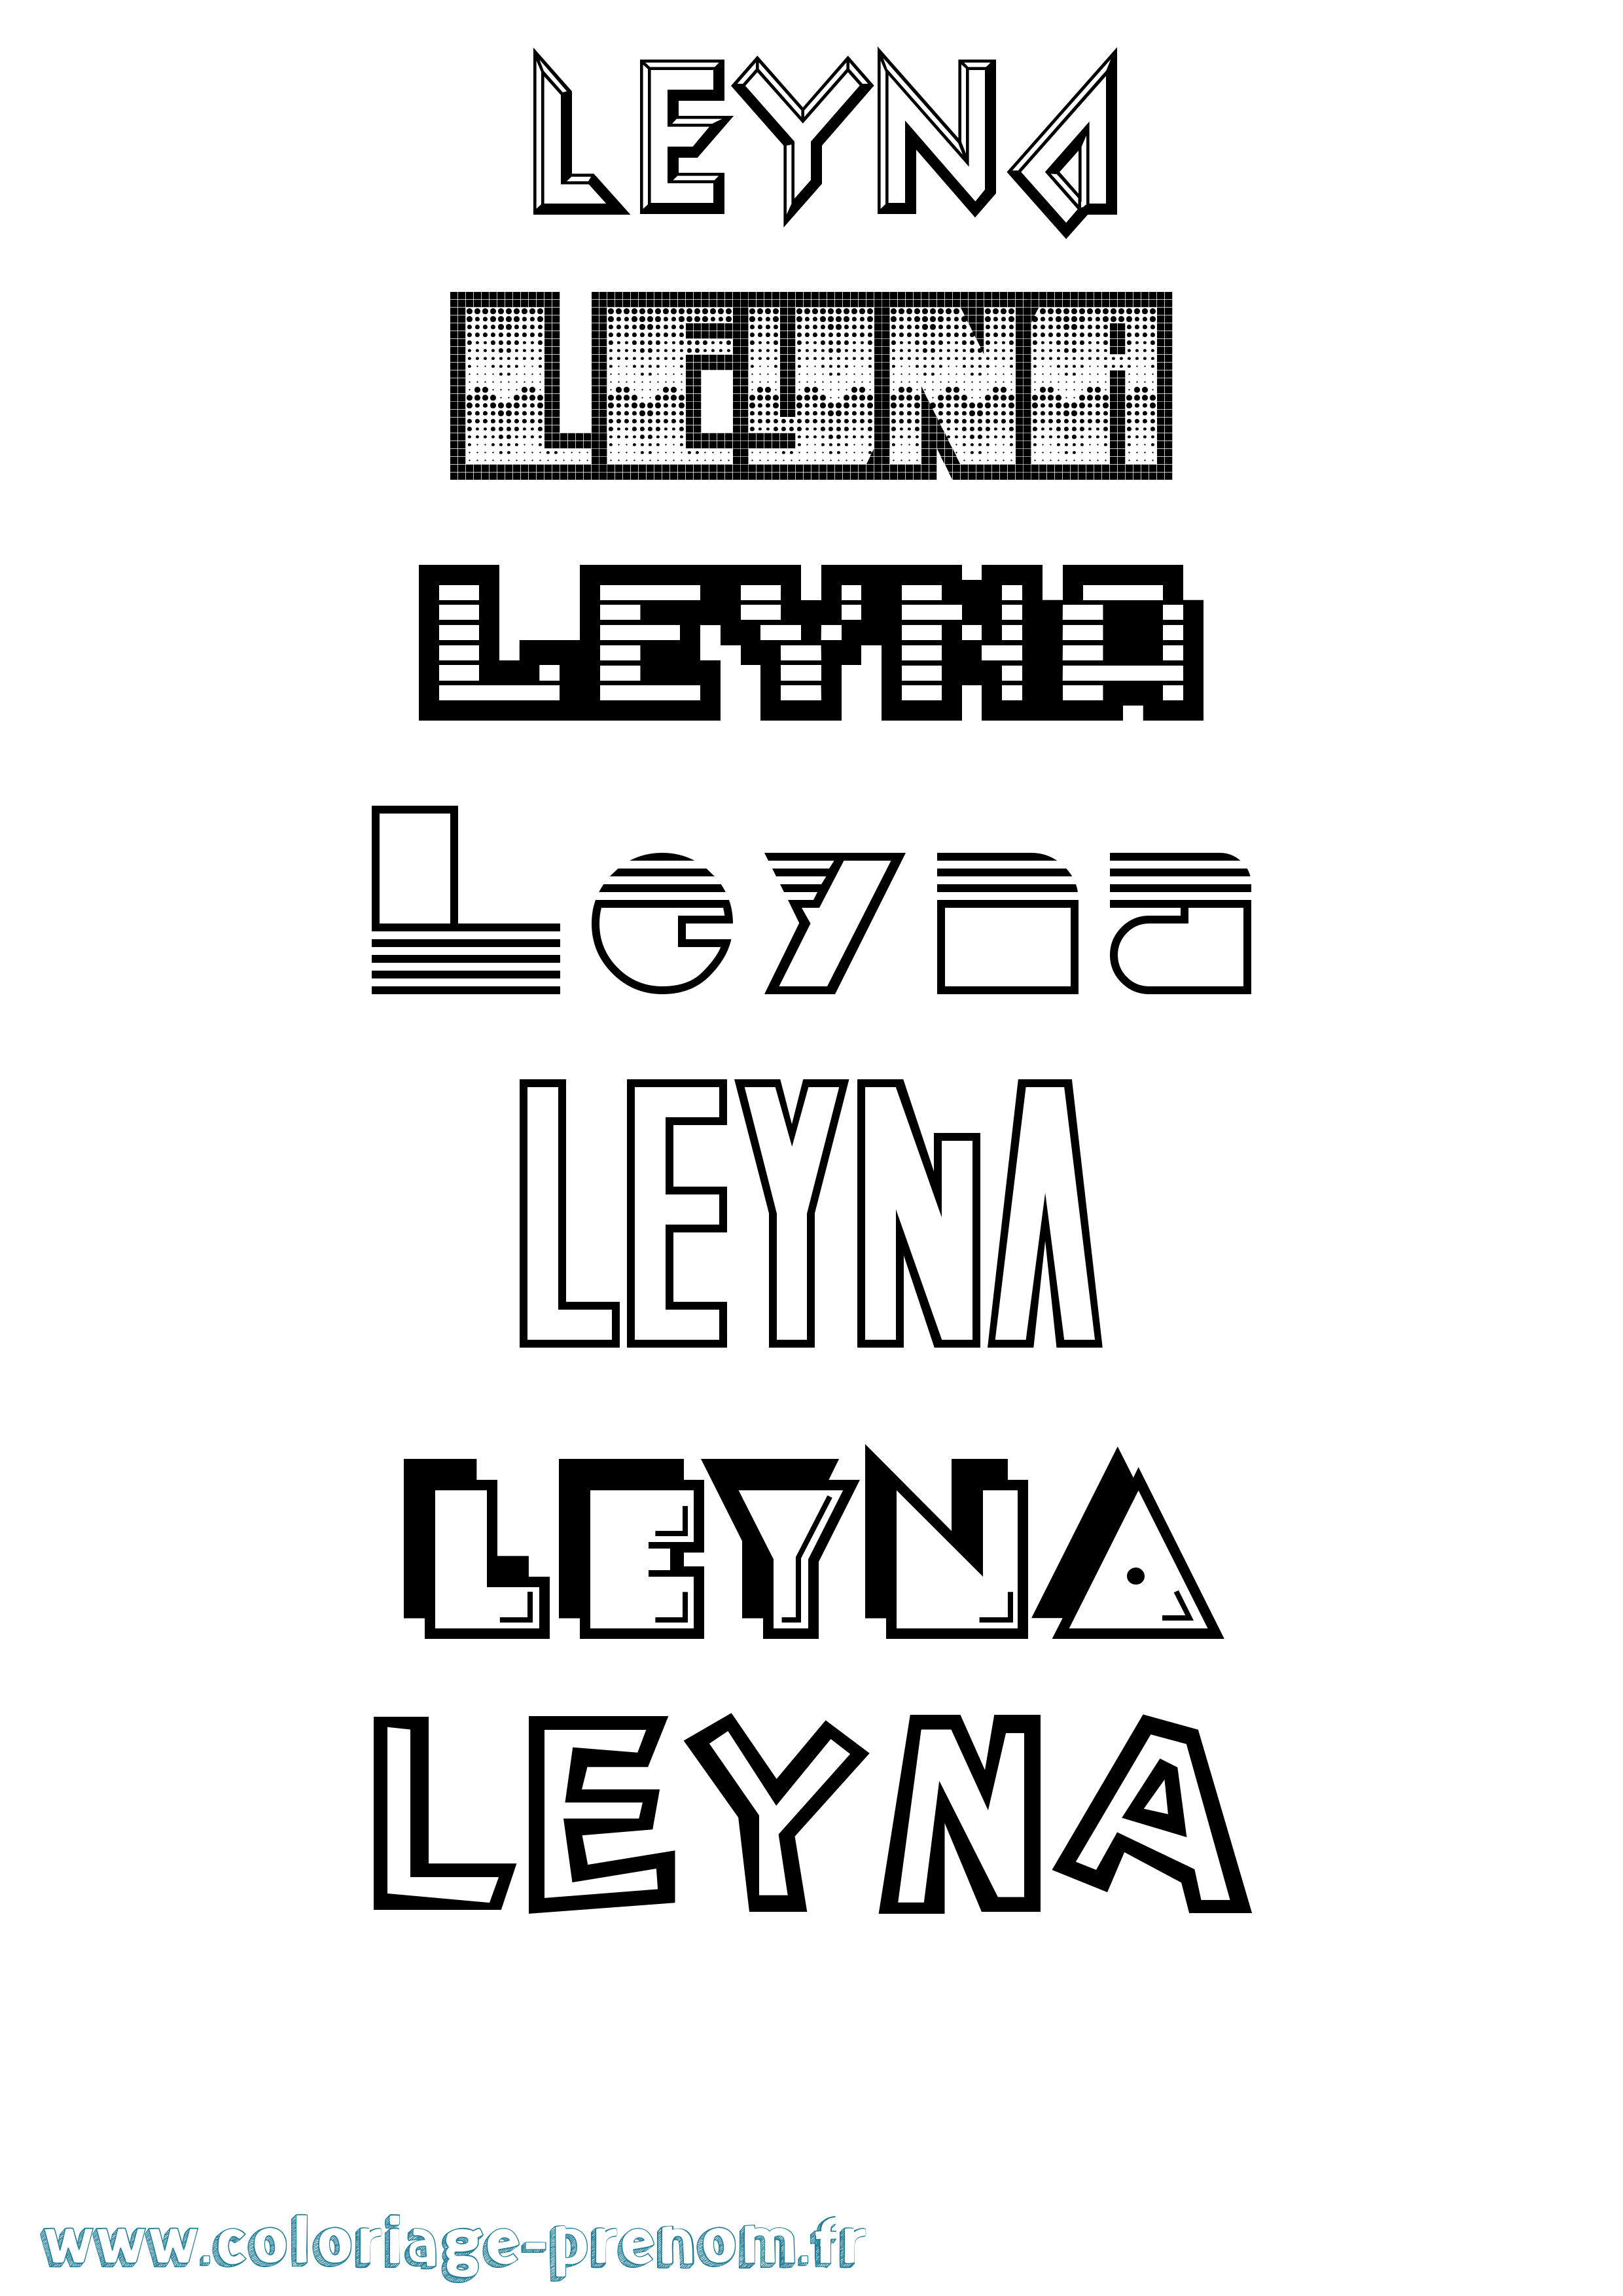 Coloriage prénom Leyna Jeux Vidéos